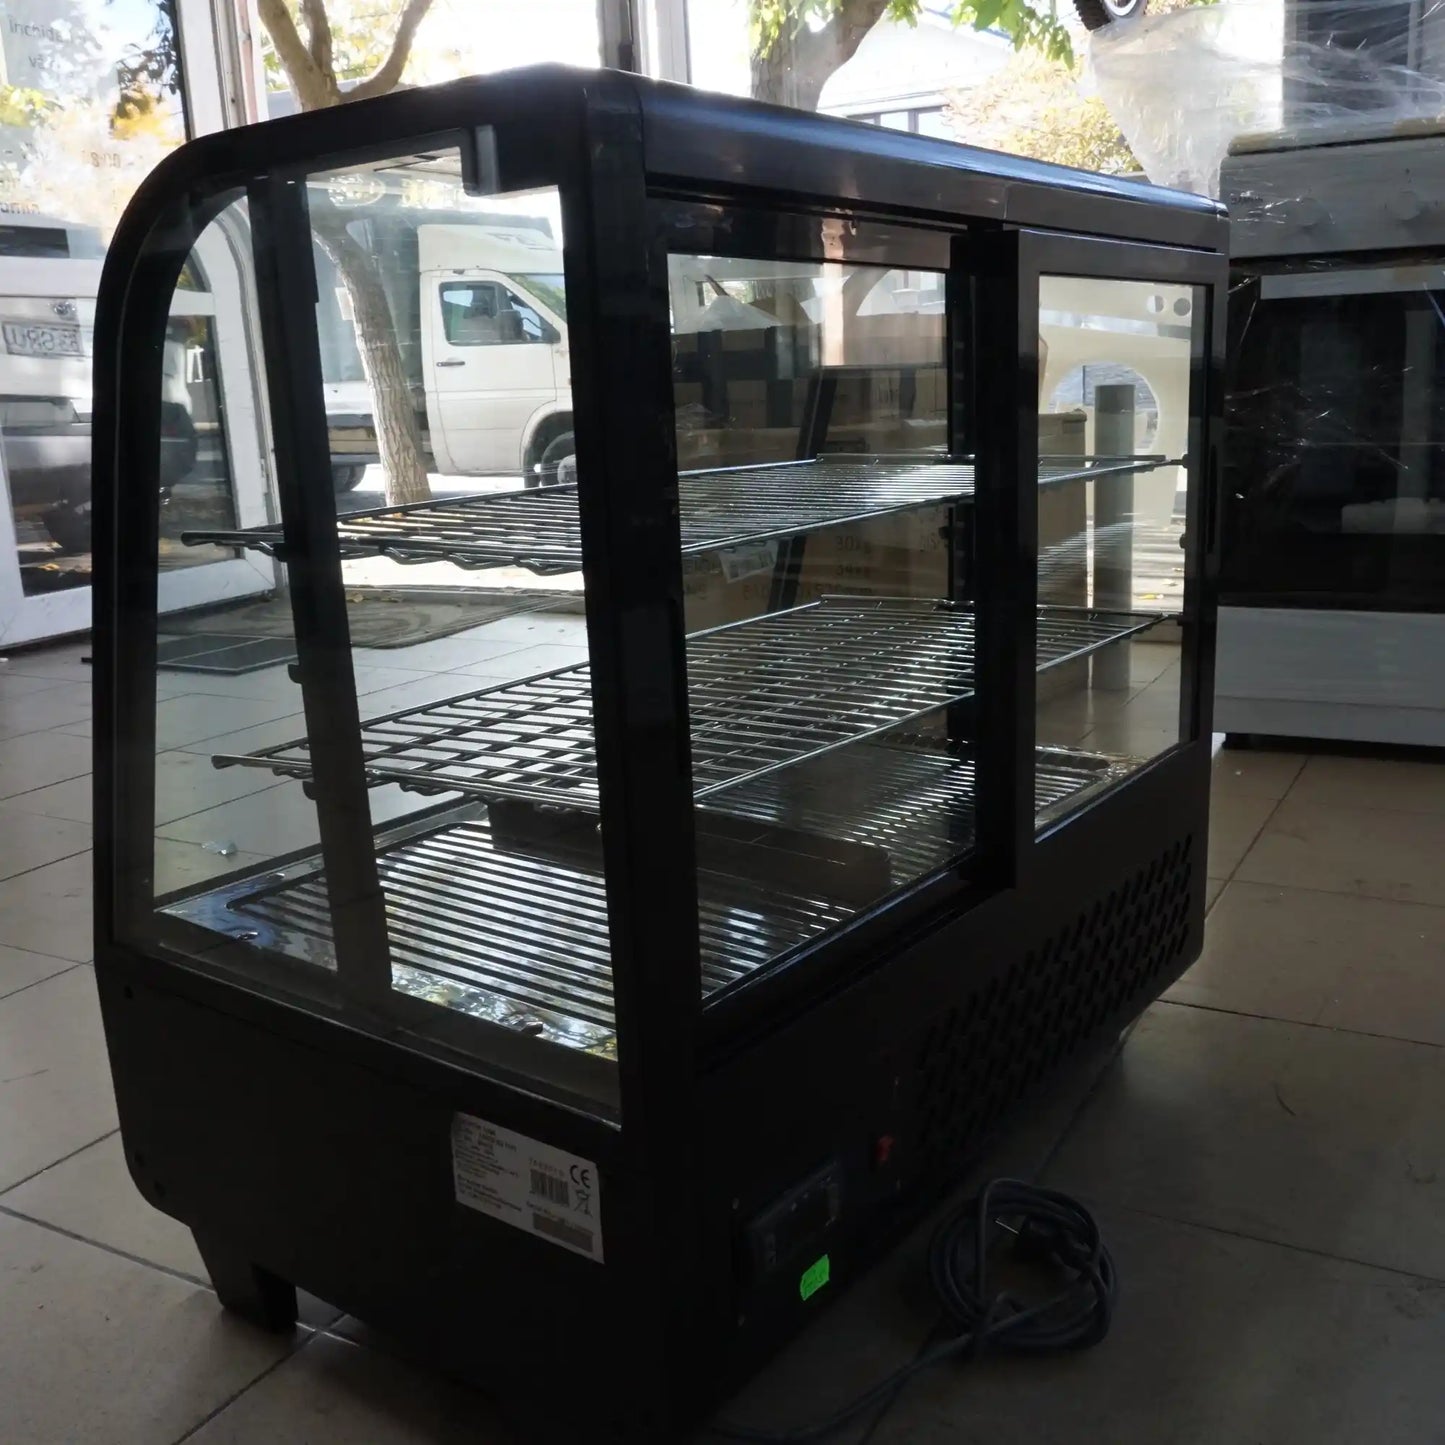 Vitrină frigorifică pentru patiserie RTW-100B, 70L, 1-10°C, 2 rafturi ajustabile, panou comandă digital, iluminare LED